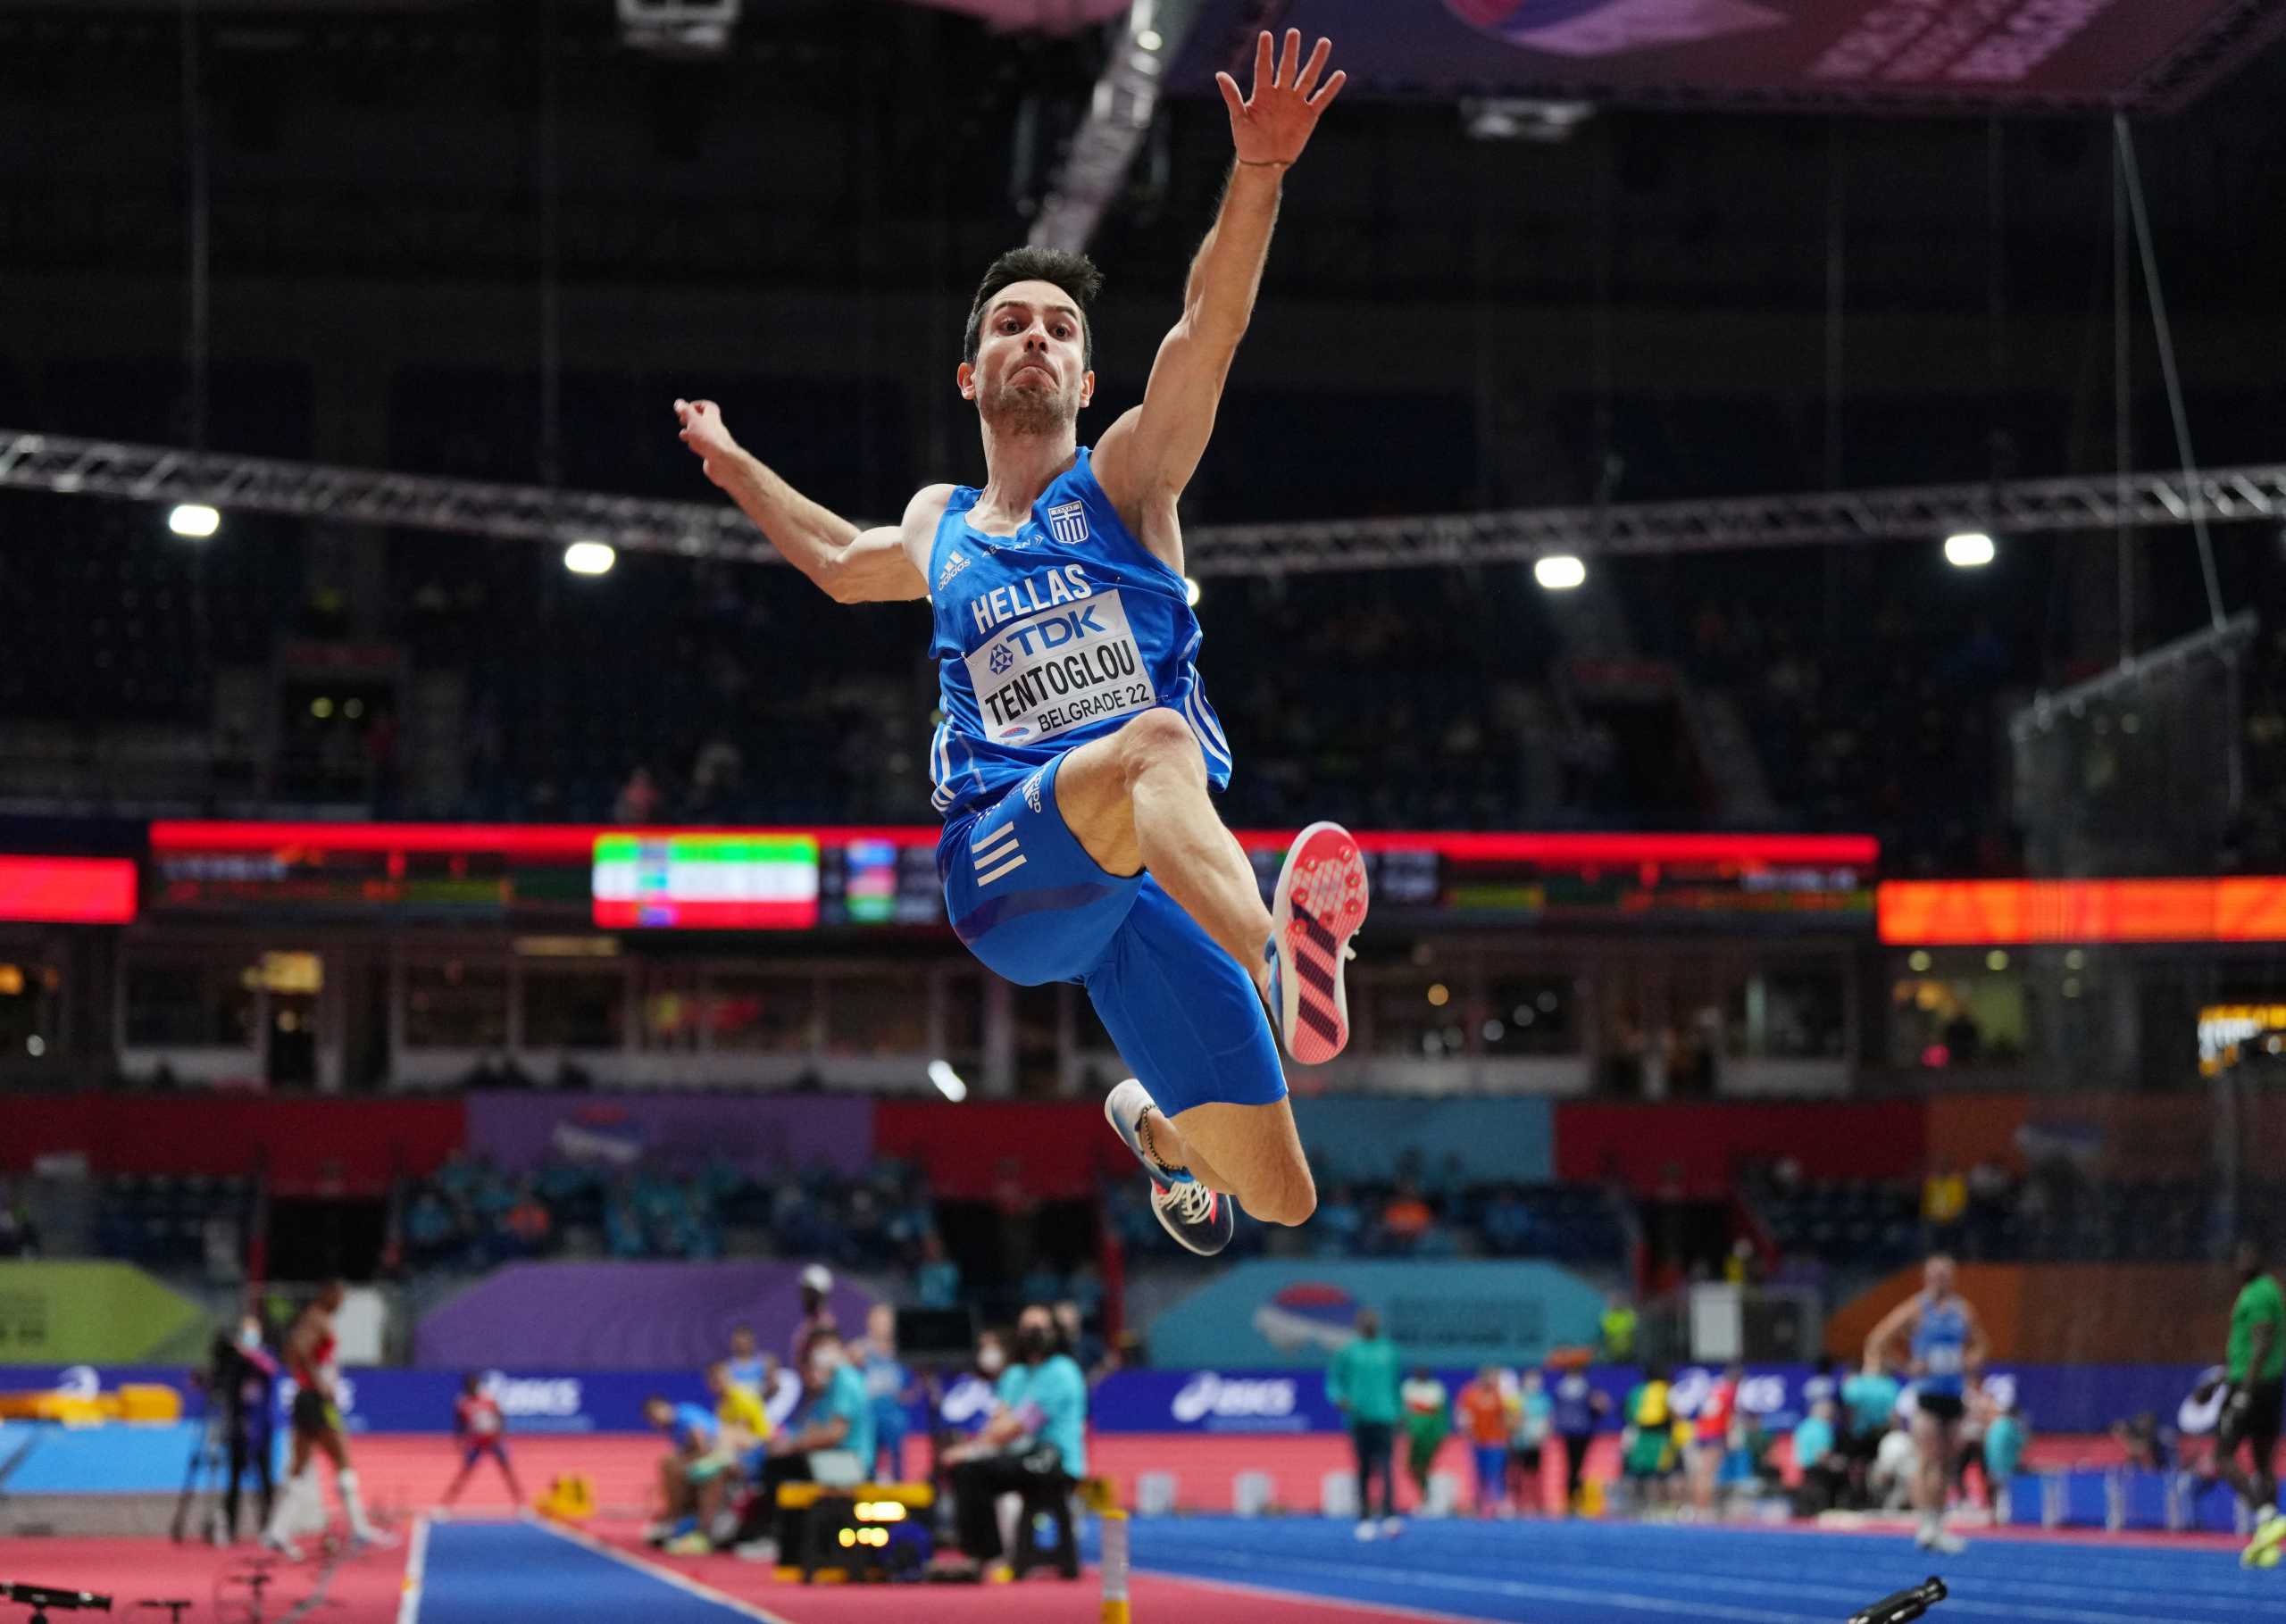 Μίλτος Τεντόγλου: Έφερε το 13ο ελληνικό μετάλλιο σε Παγκόσμιο πρωτάθλημα κλειστού στίβου